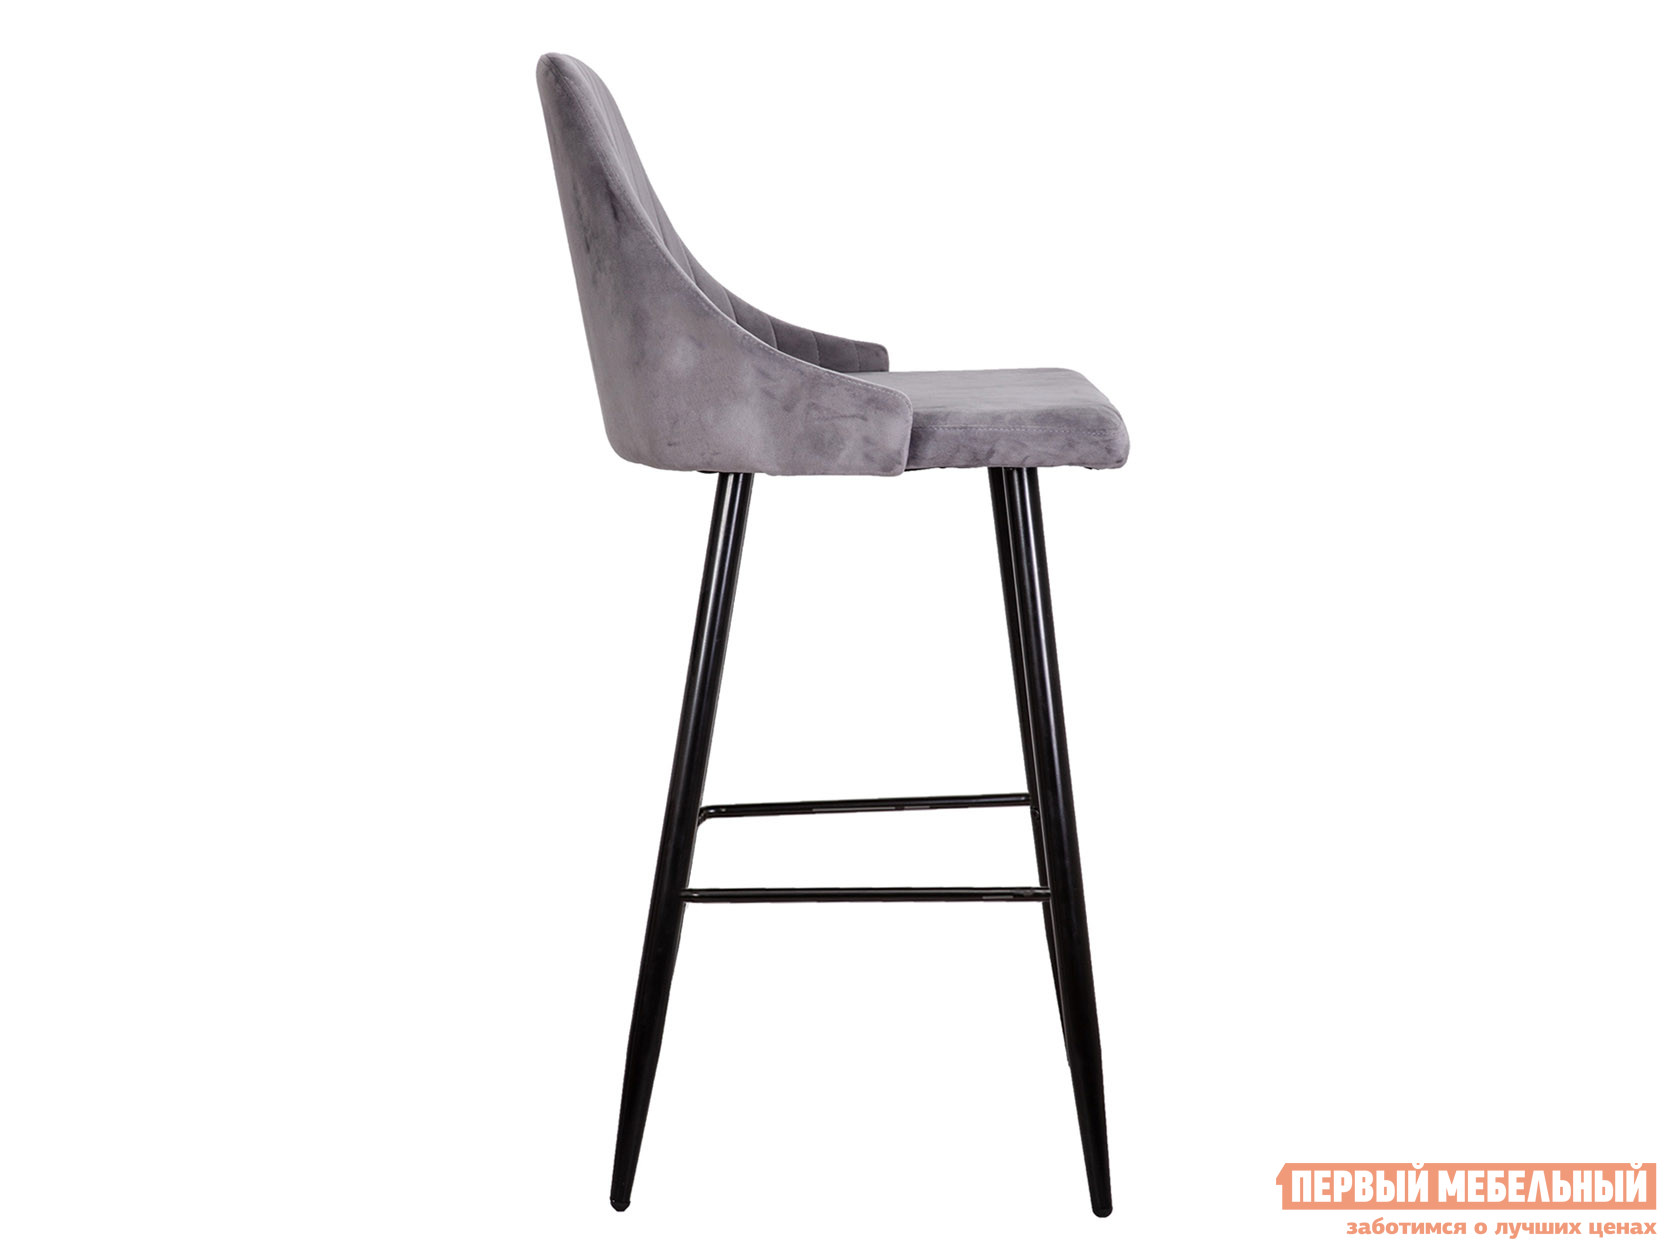 Барный стул  Меган Светло-серый, велюр от Первый Мебельный